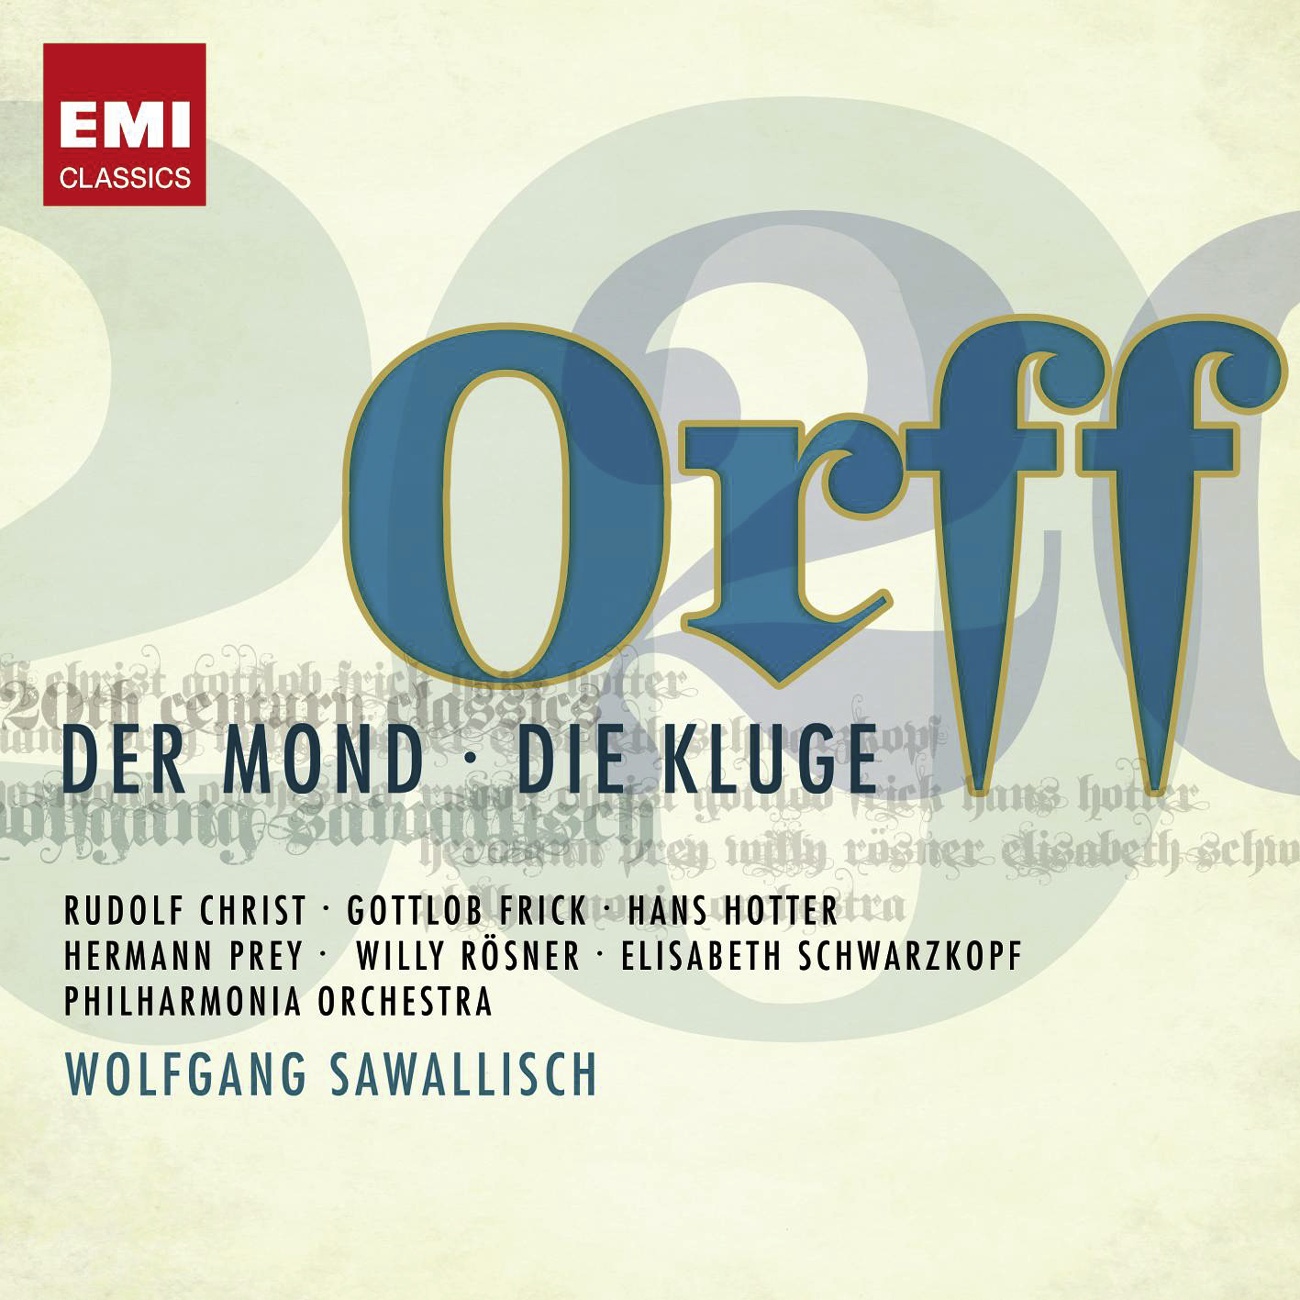 Der Mond (1998 Digital Remaster): Tanz der Toten (Orchestra)